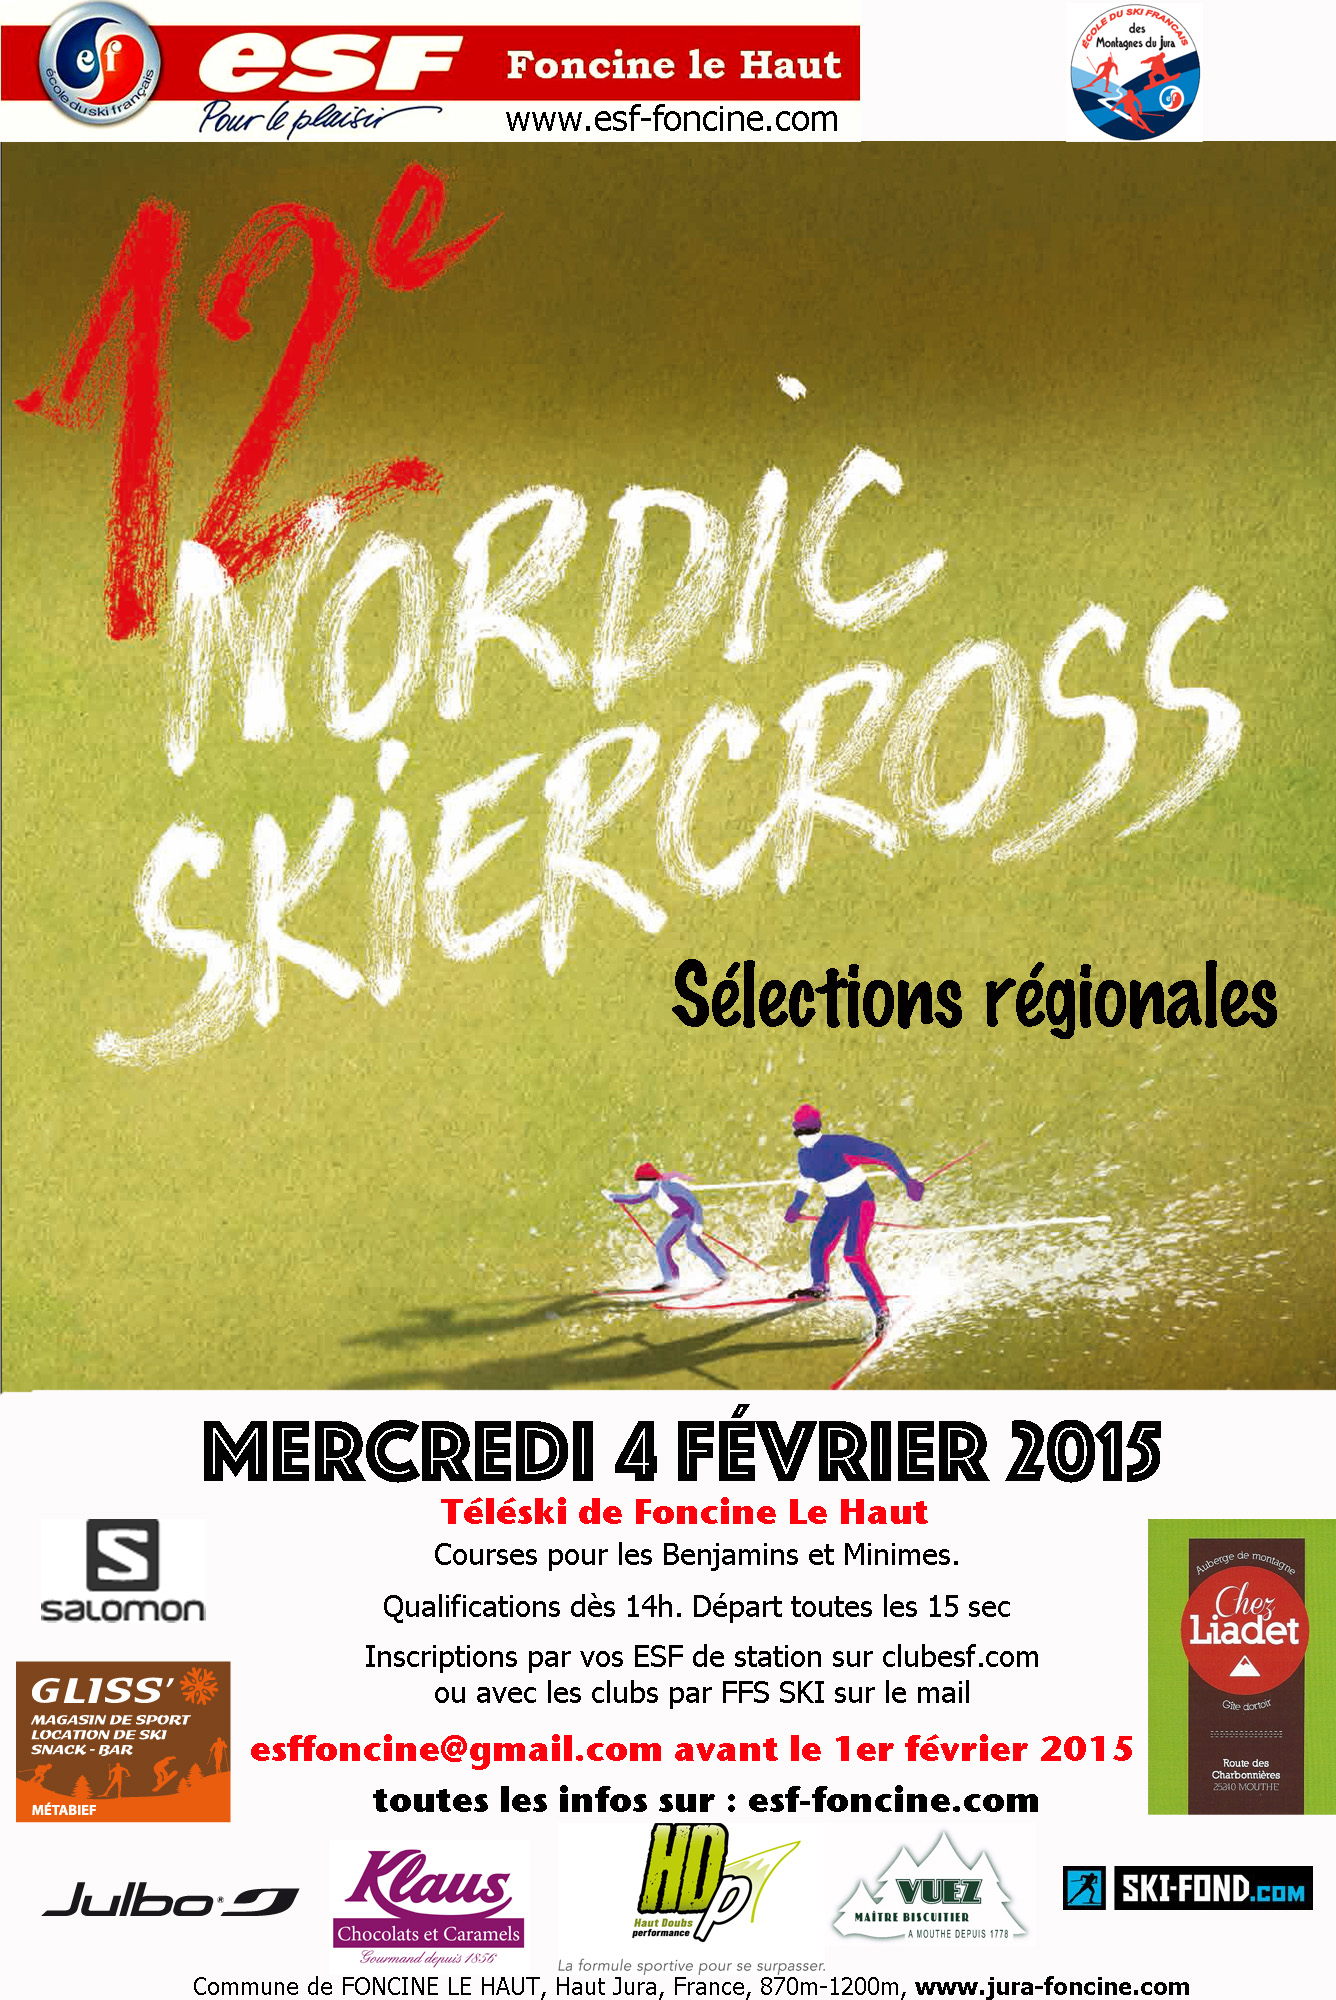 Nordic skiercross -  sélections régionales Doubs et Jura